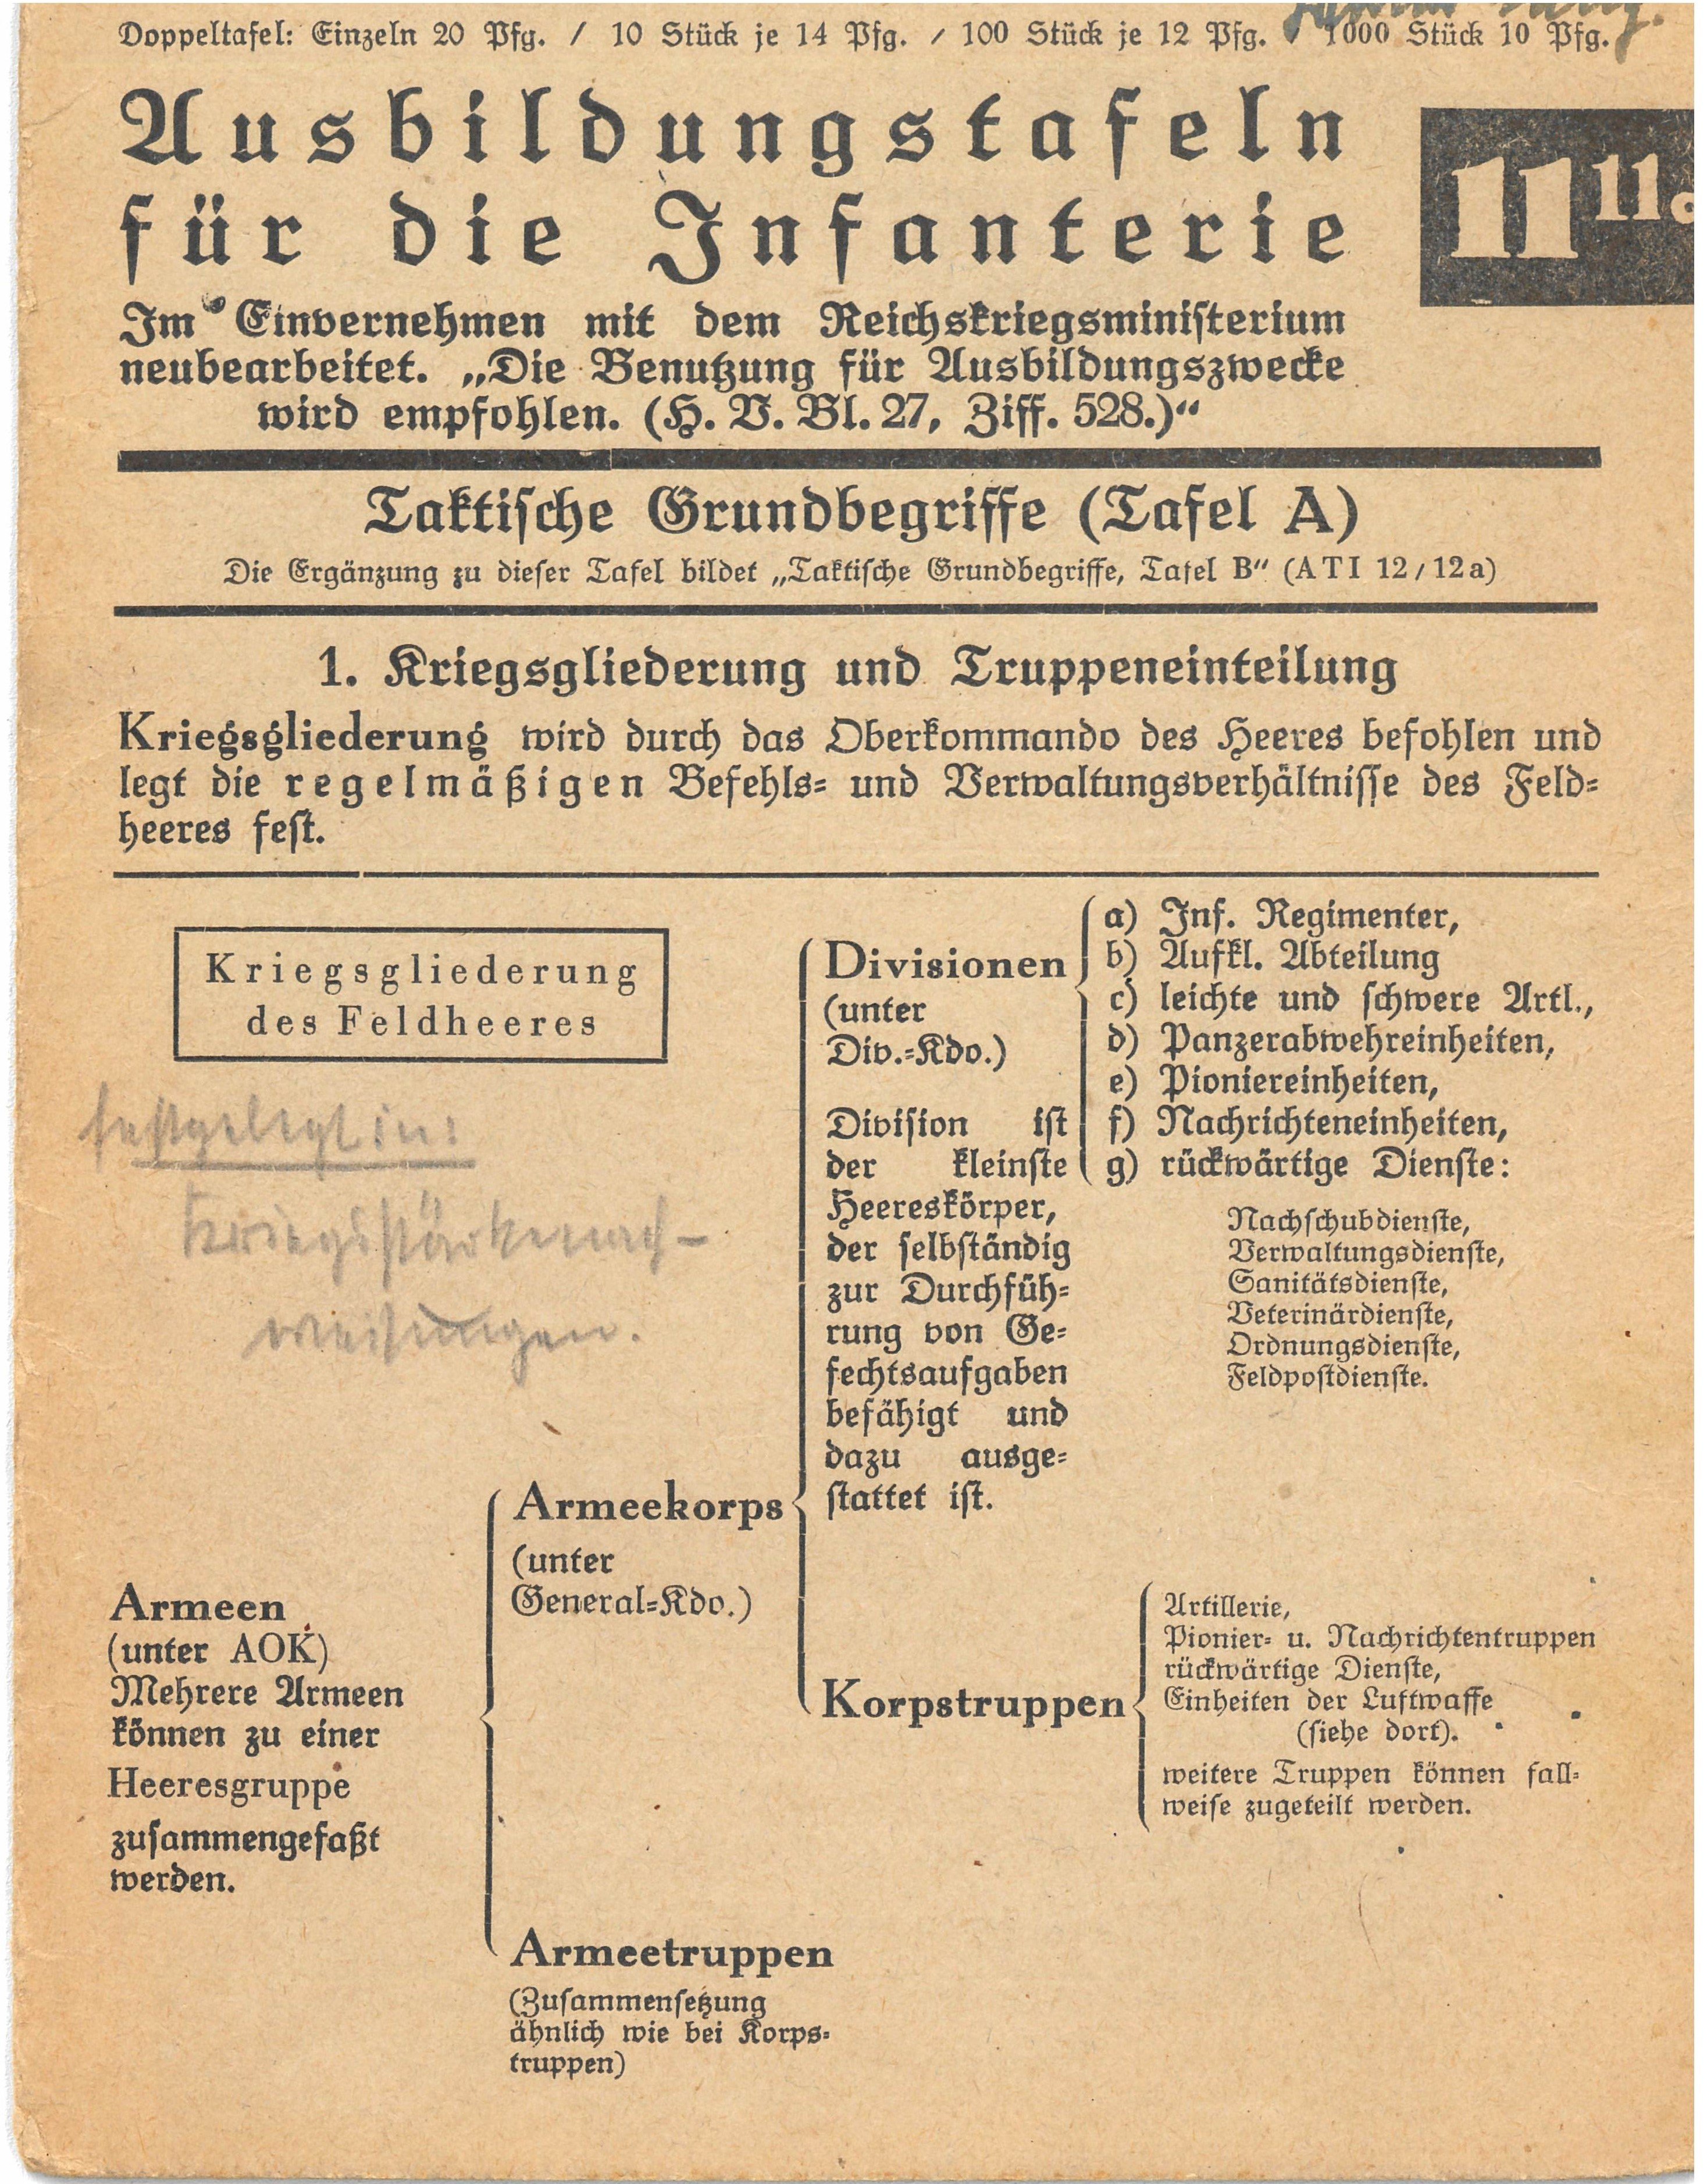 Taschenkarte "Ausbildungstafeln für die Infanterie", 1940 (Deutsch-Russisches Museum Berlin-Karlshorst CC BY-NC-SA)